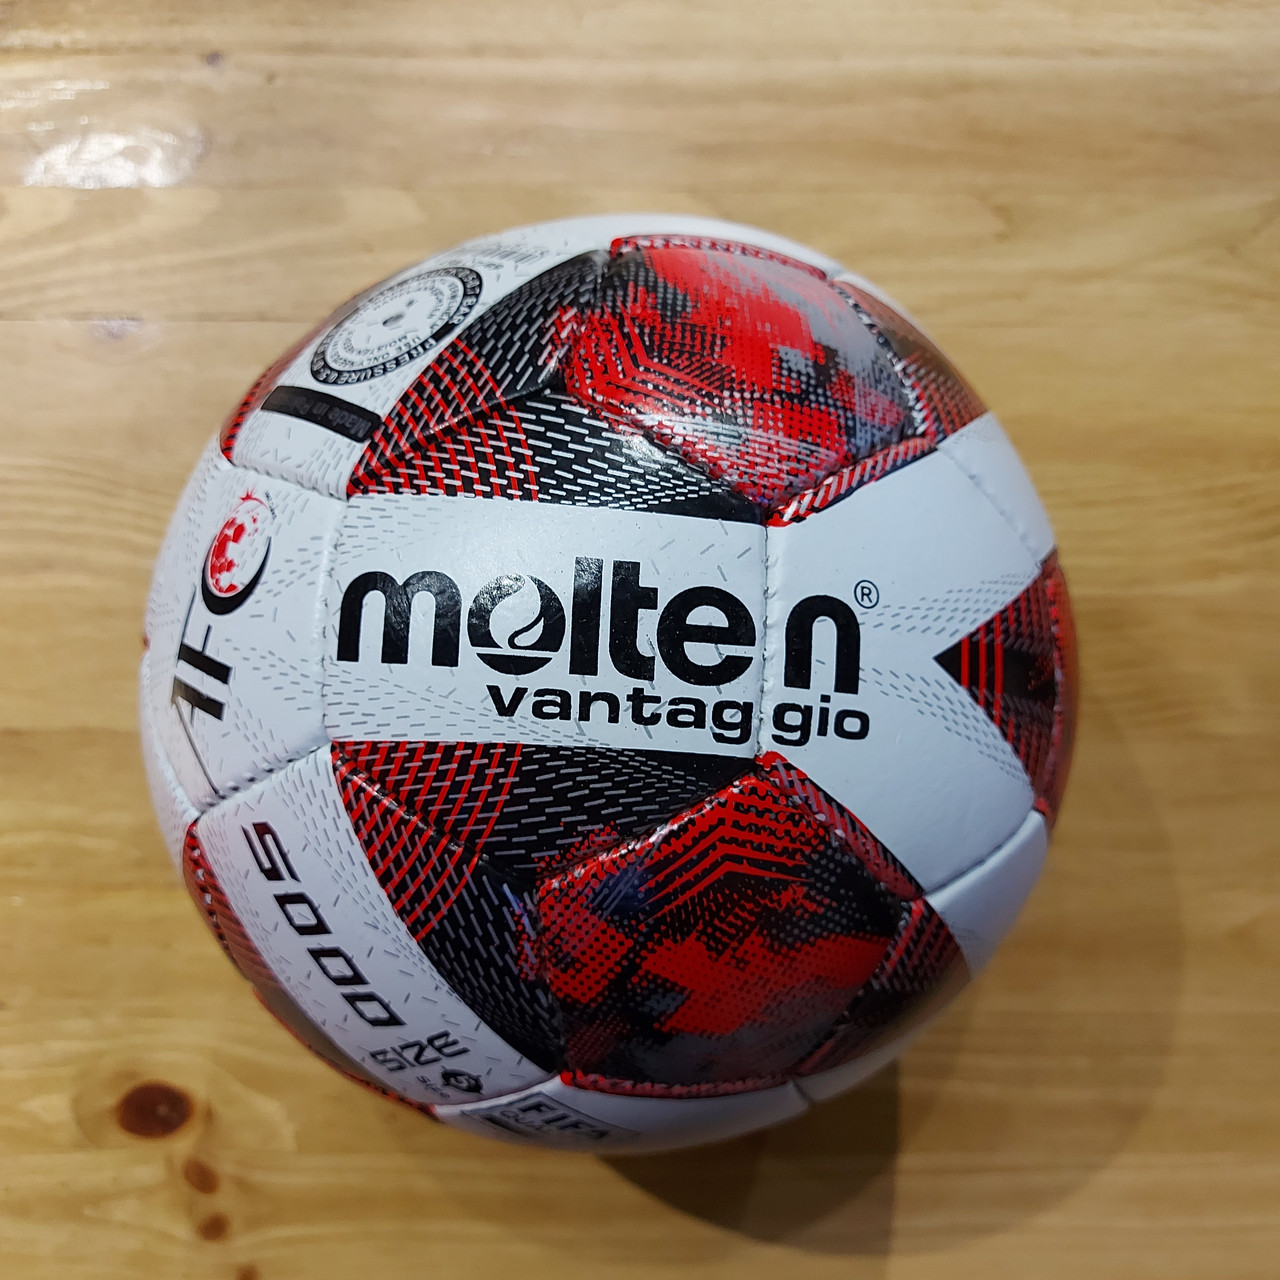 Оригинальный Футбольный мяч "Molten" Vantaggio. Японский бренд. Size 5. Профессиональный. Бело-красный.